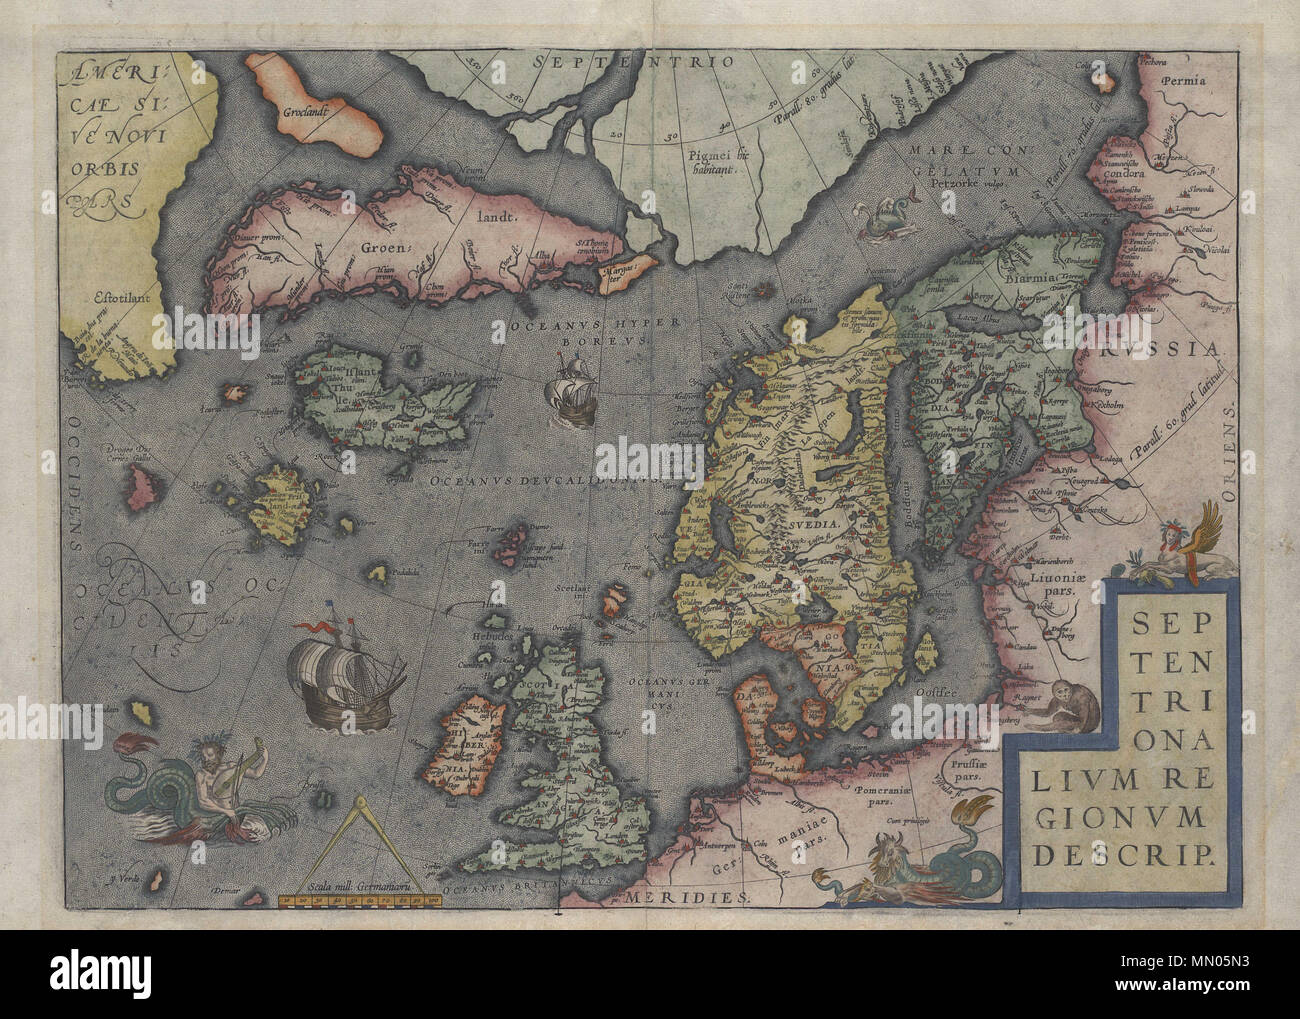 . Français: Carte de l'Islande par Abraham Ortelius en 1570. 1570. Abraham Ortelius, Abraham Ortelius - Septentrionalivm regionvm descriptio - 1570 Stockfoto